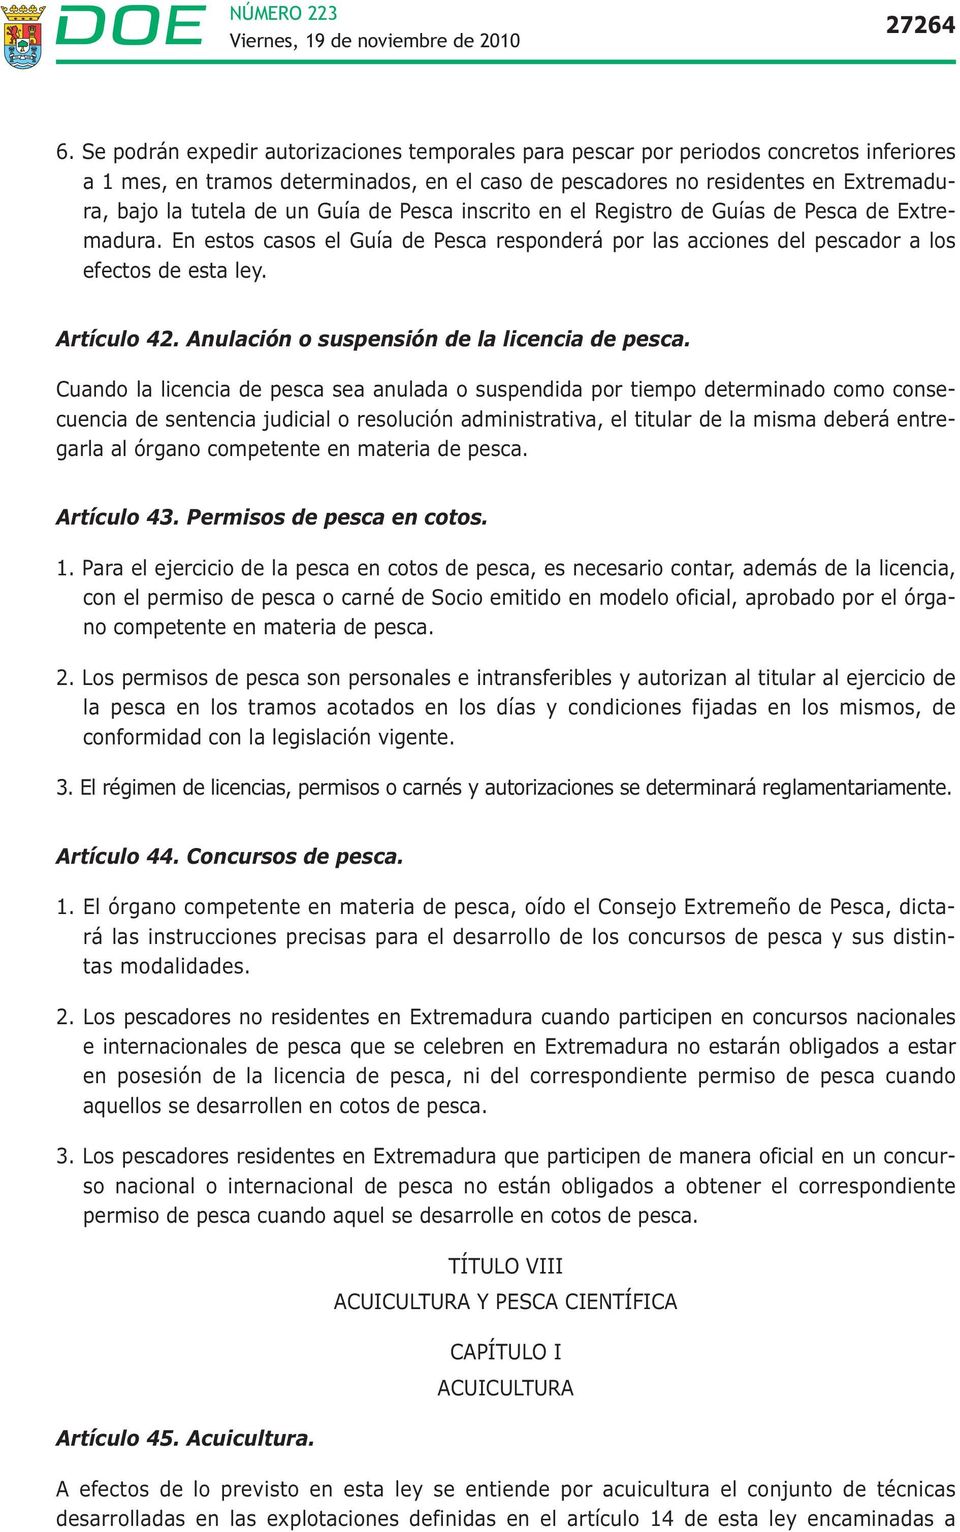 Guía de Pesca inscrito en el Registro de Guías de Pesca de Extremadura. En estos casos el Guía de Pesca responderá por las acciones del pescador a los efectos de esta ley. Artículo 42.